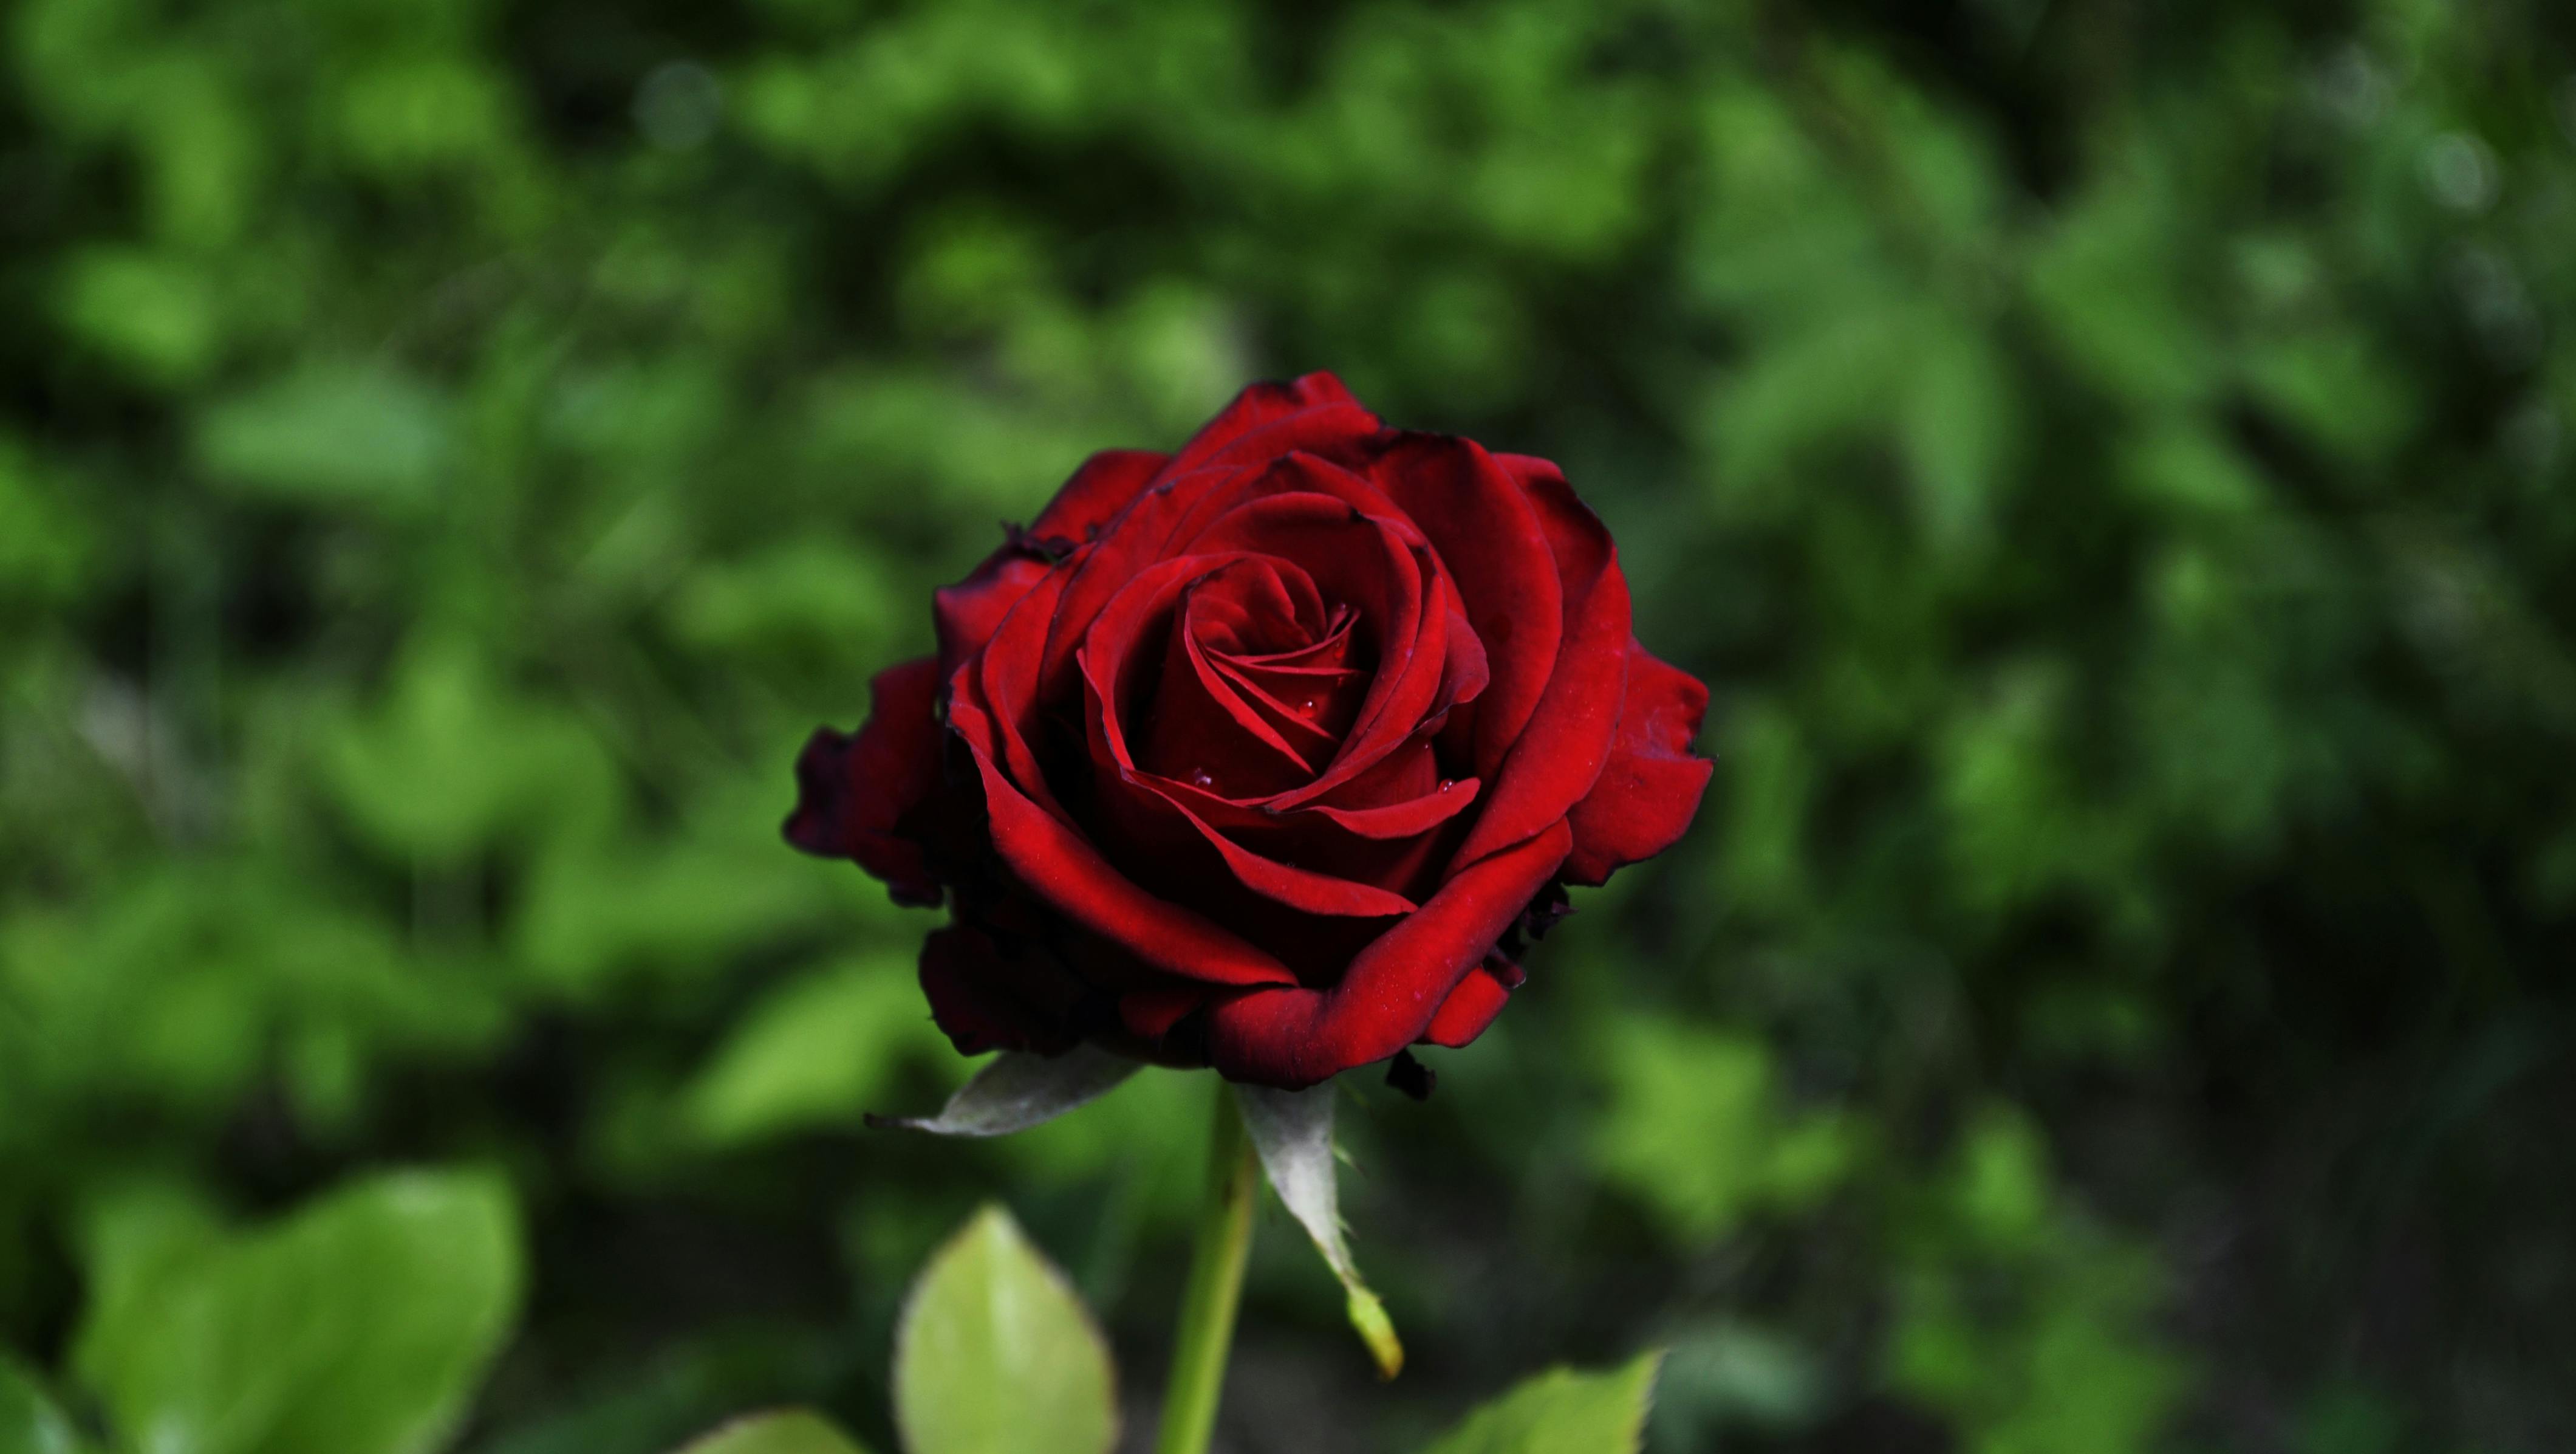 Paling Keren 30 Gambar Taman Bunga Mawar Merah Galeri 